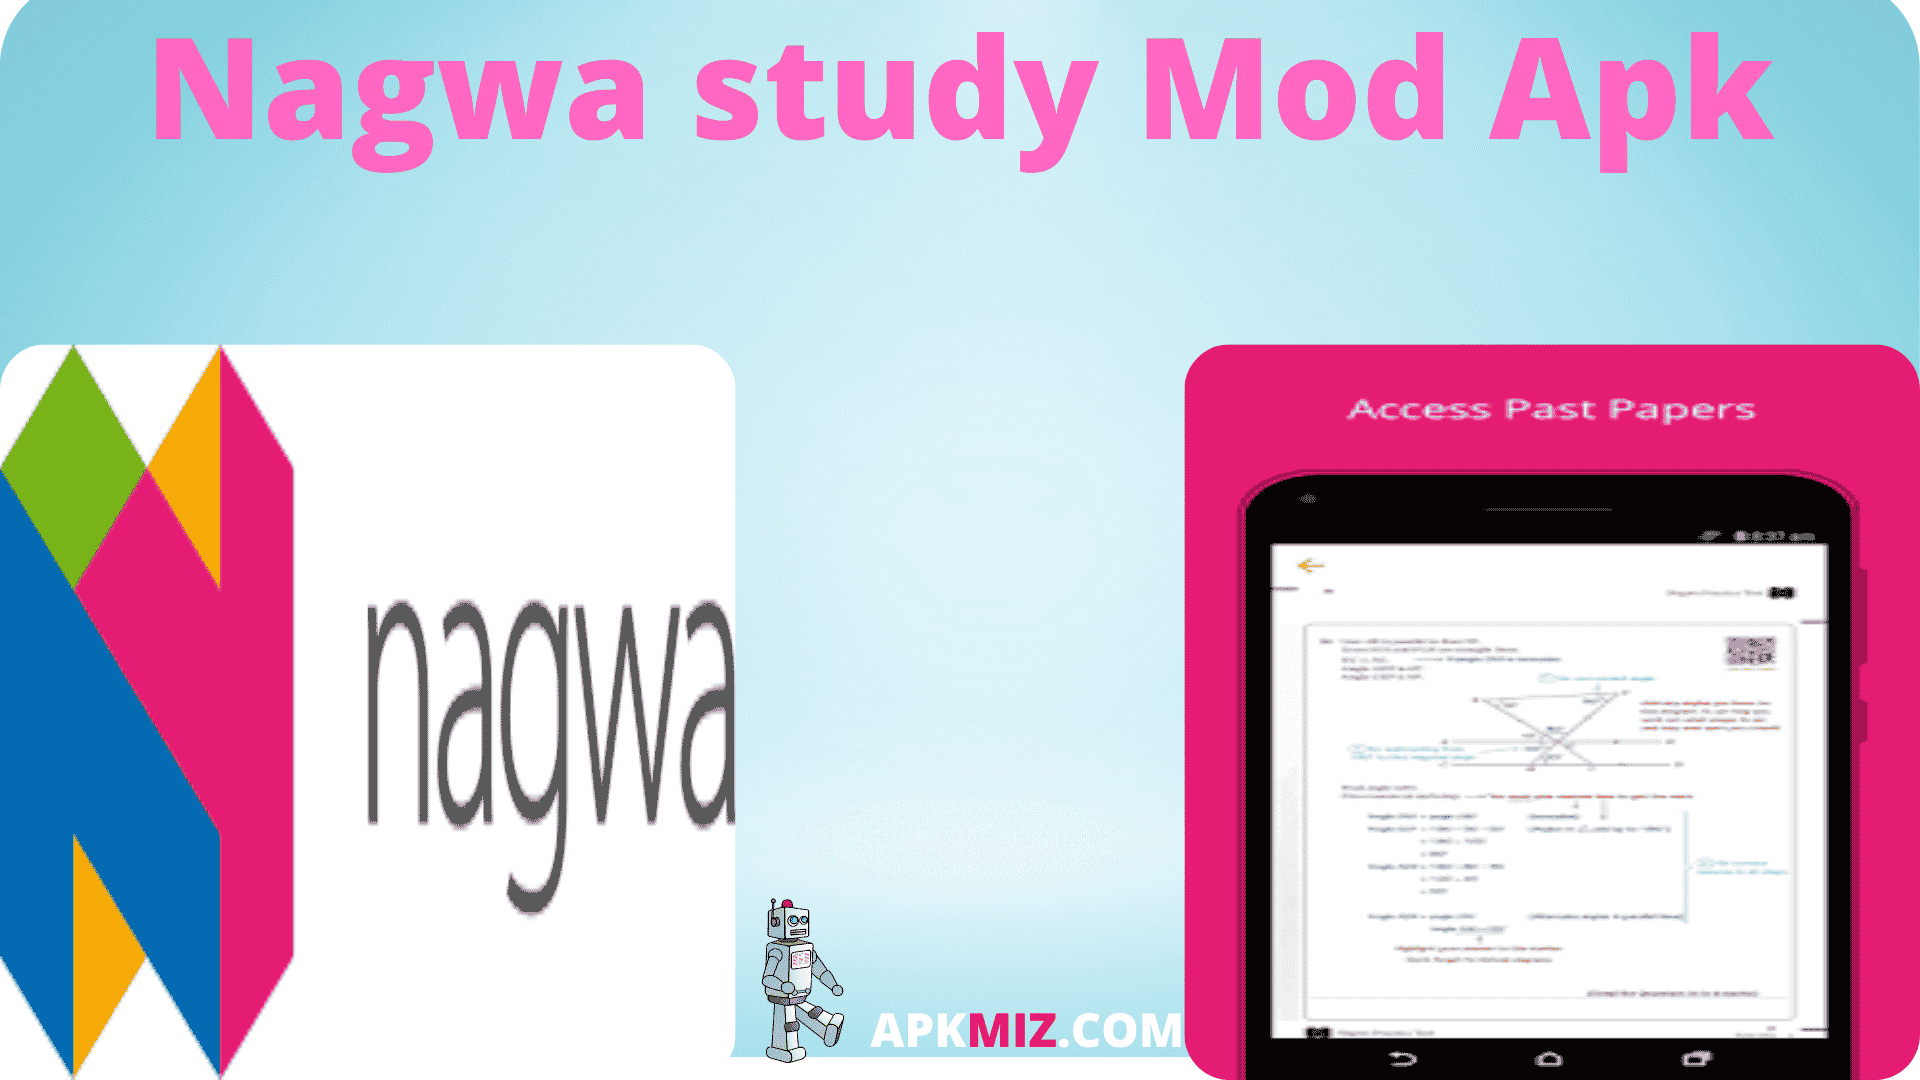 Nagwa study Mod Apk